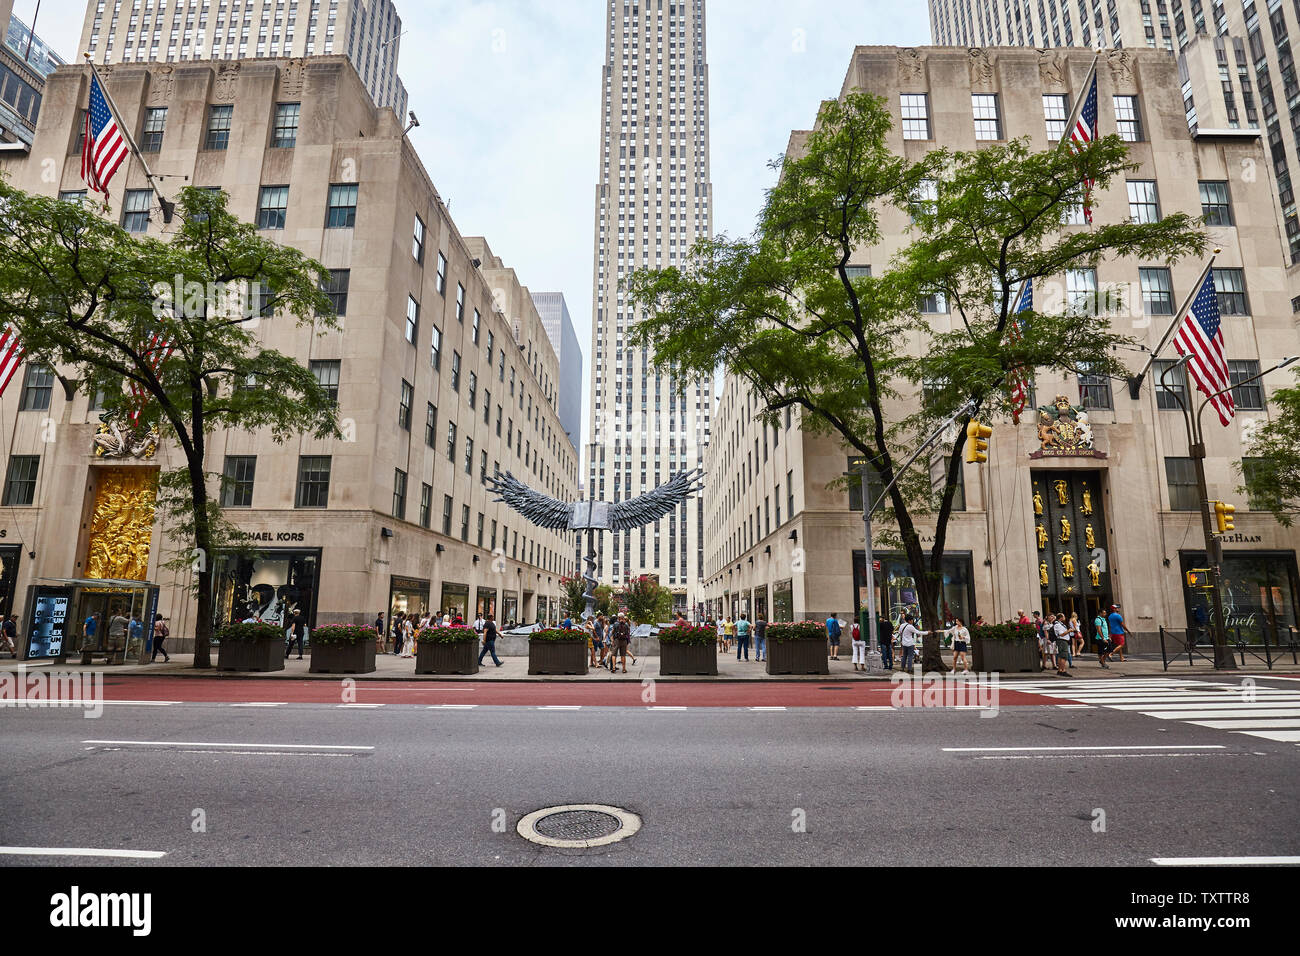 New York, USA - Juli 04, 2018: Blick auf die Fifth Avenue, auch als Zeile Millionaire's genannt, es ist eines der teuersten Straßen der Welt. Stockfoto